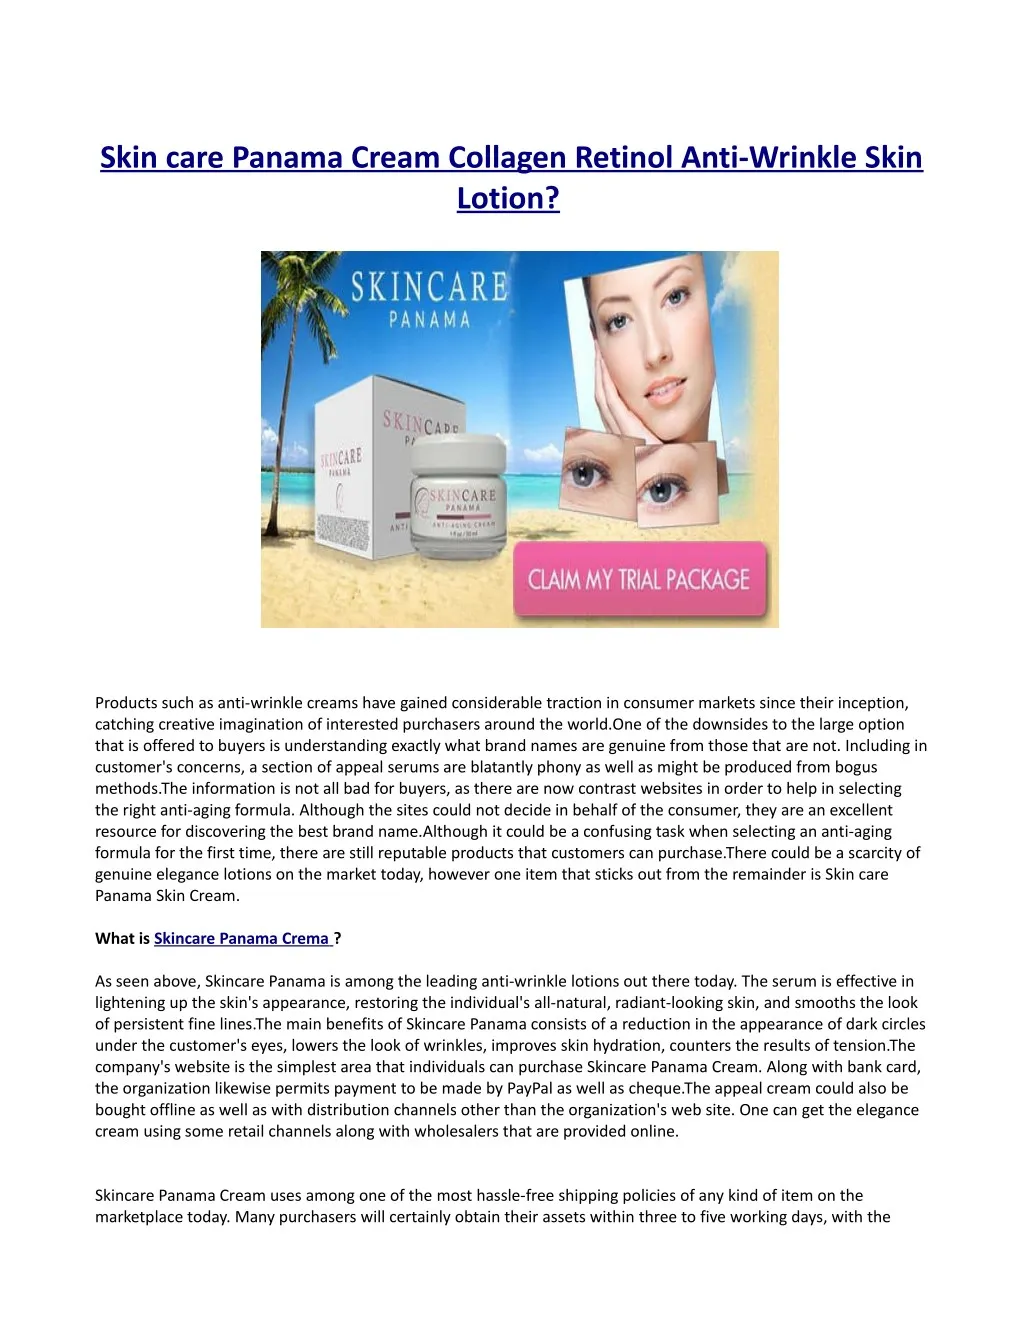 skin care panama cream collagen retinol anti